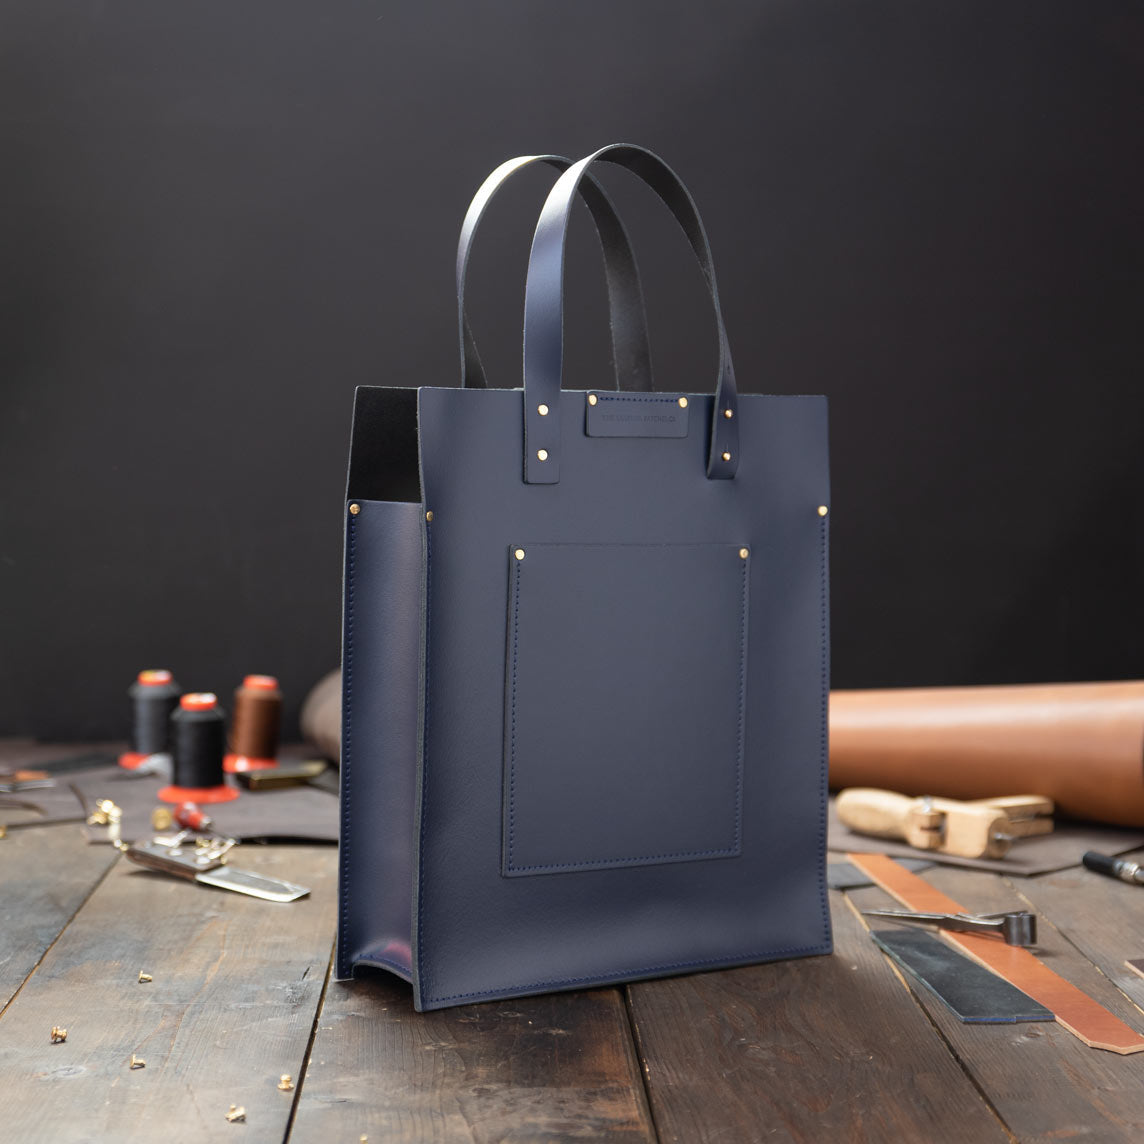 Leather Shopper in Taupe Large Handbag Leather Shoulder Bag 